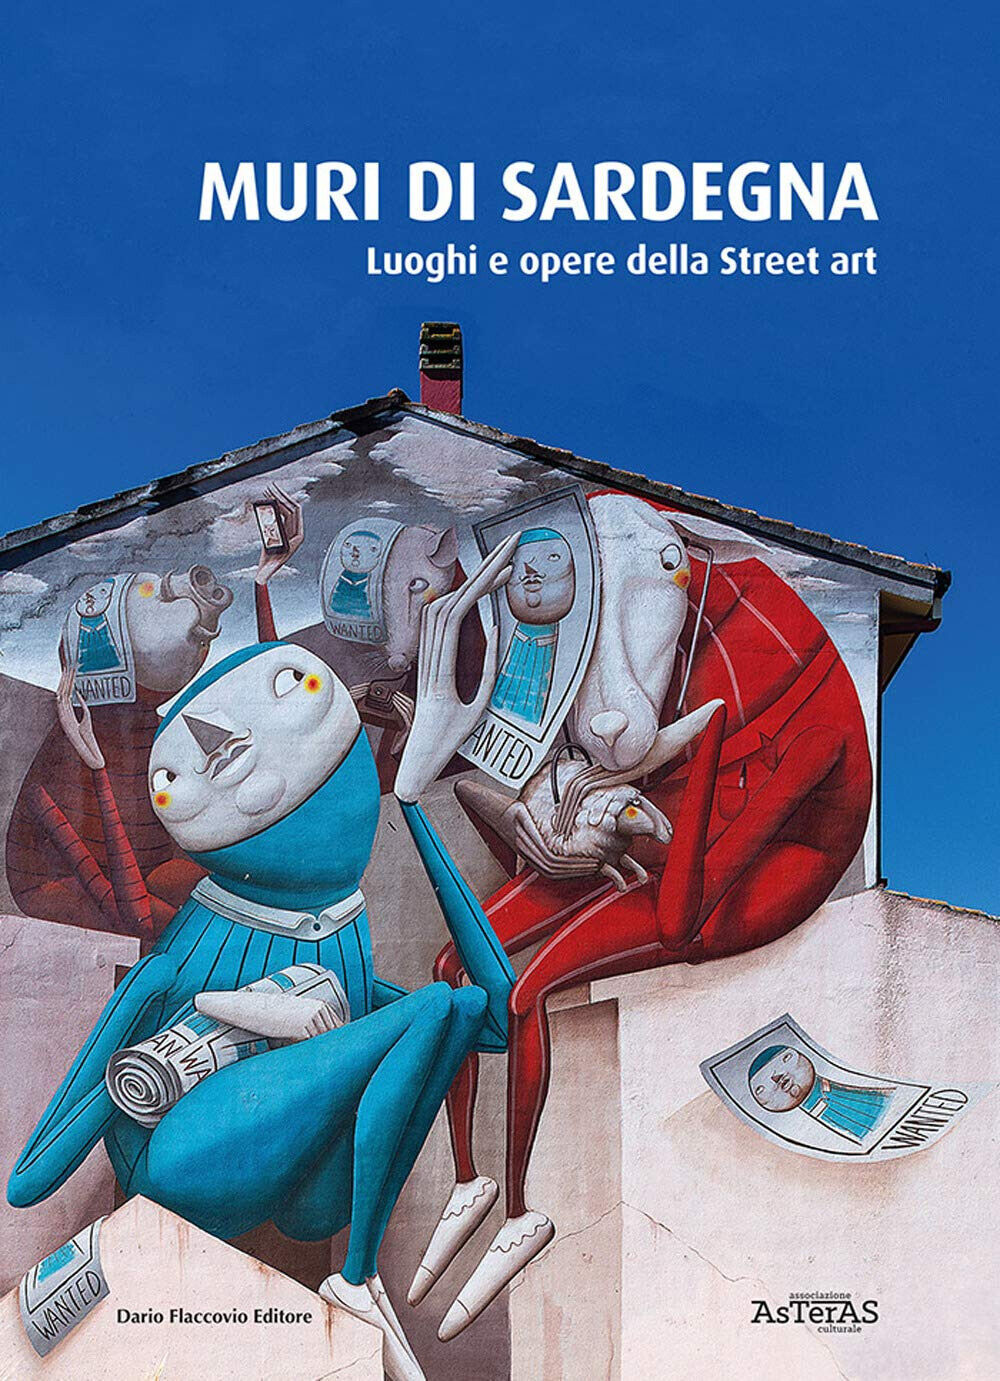 Muri di Sardegna. Luoghi e opere della street art -Asteras - 2020